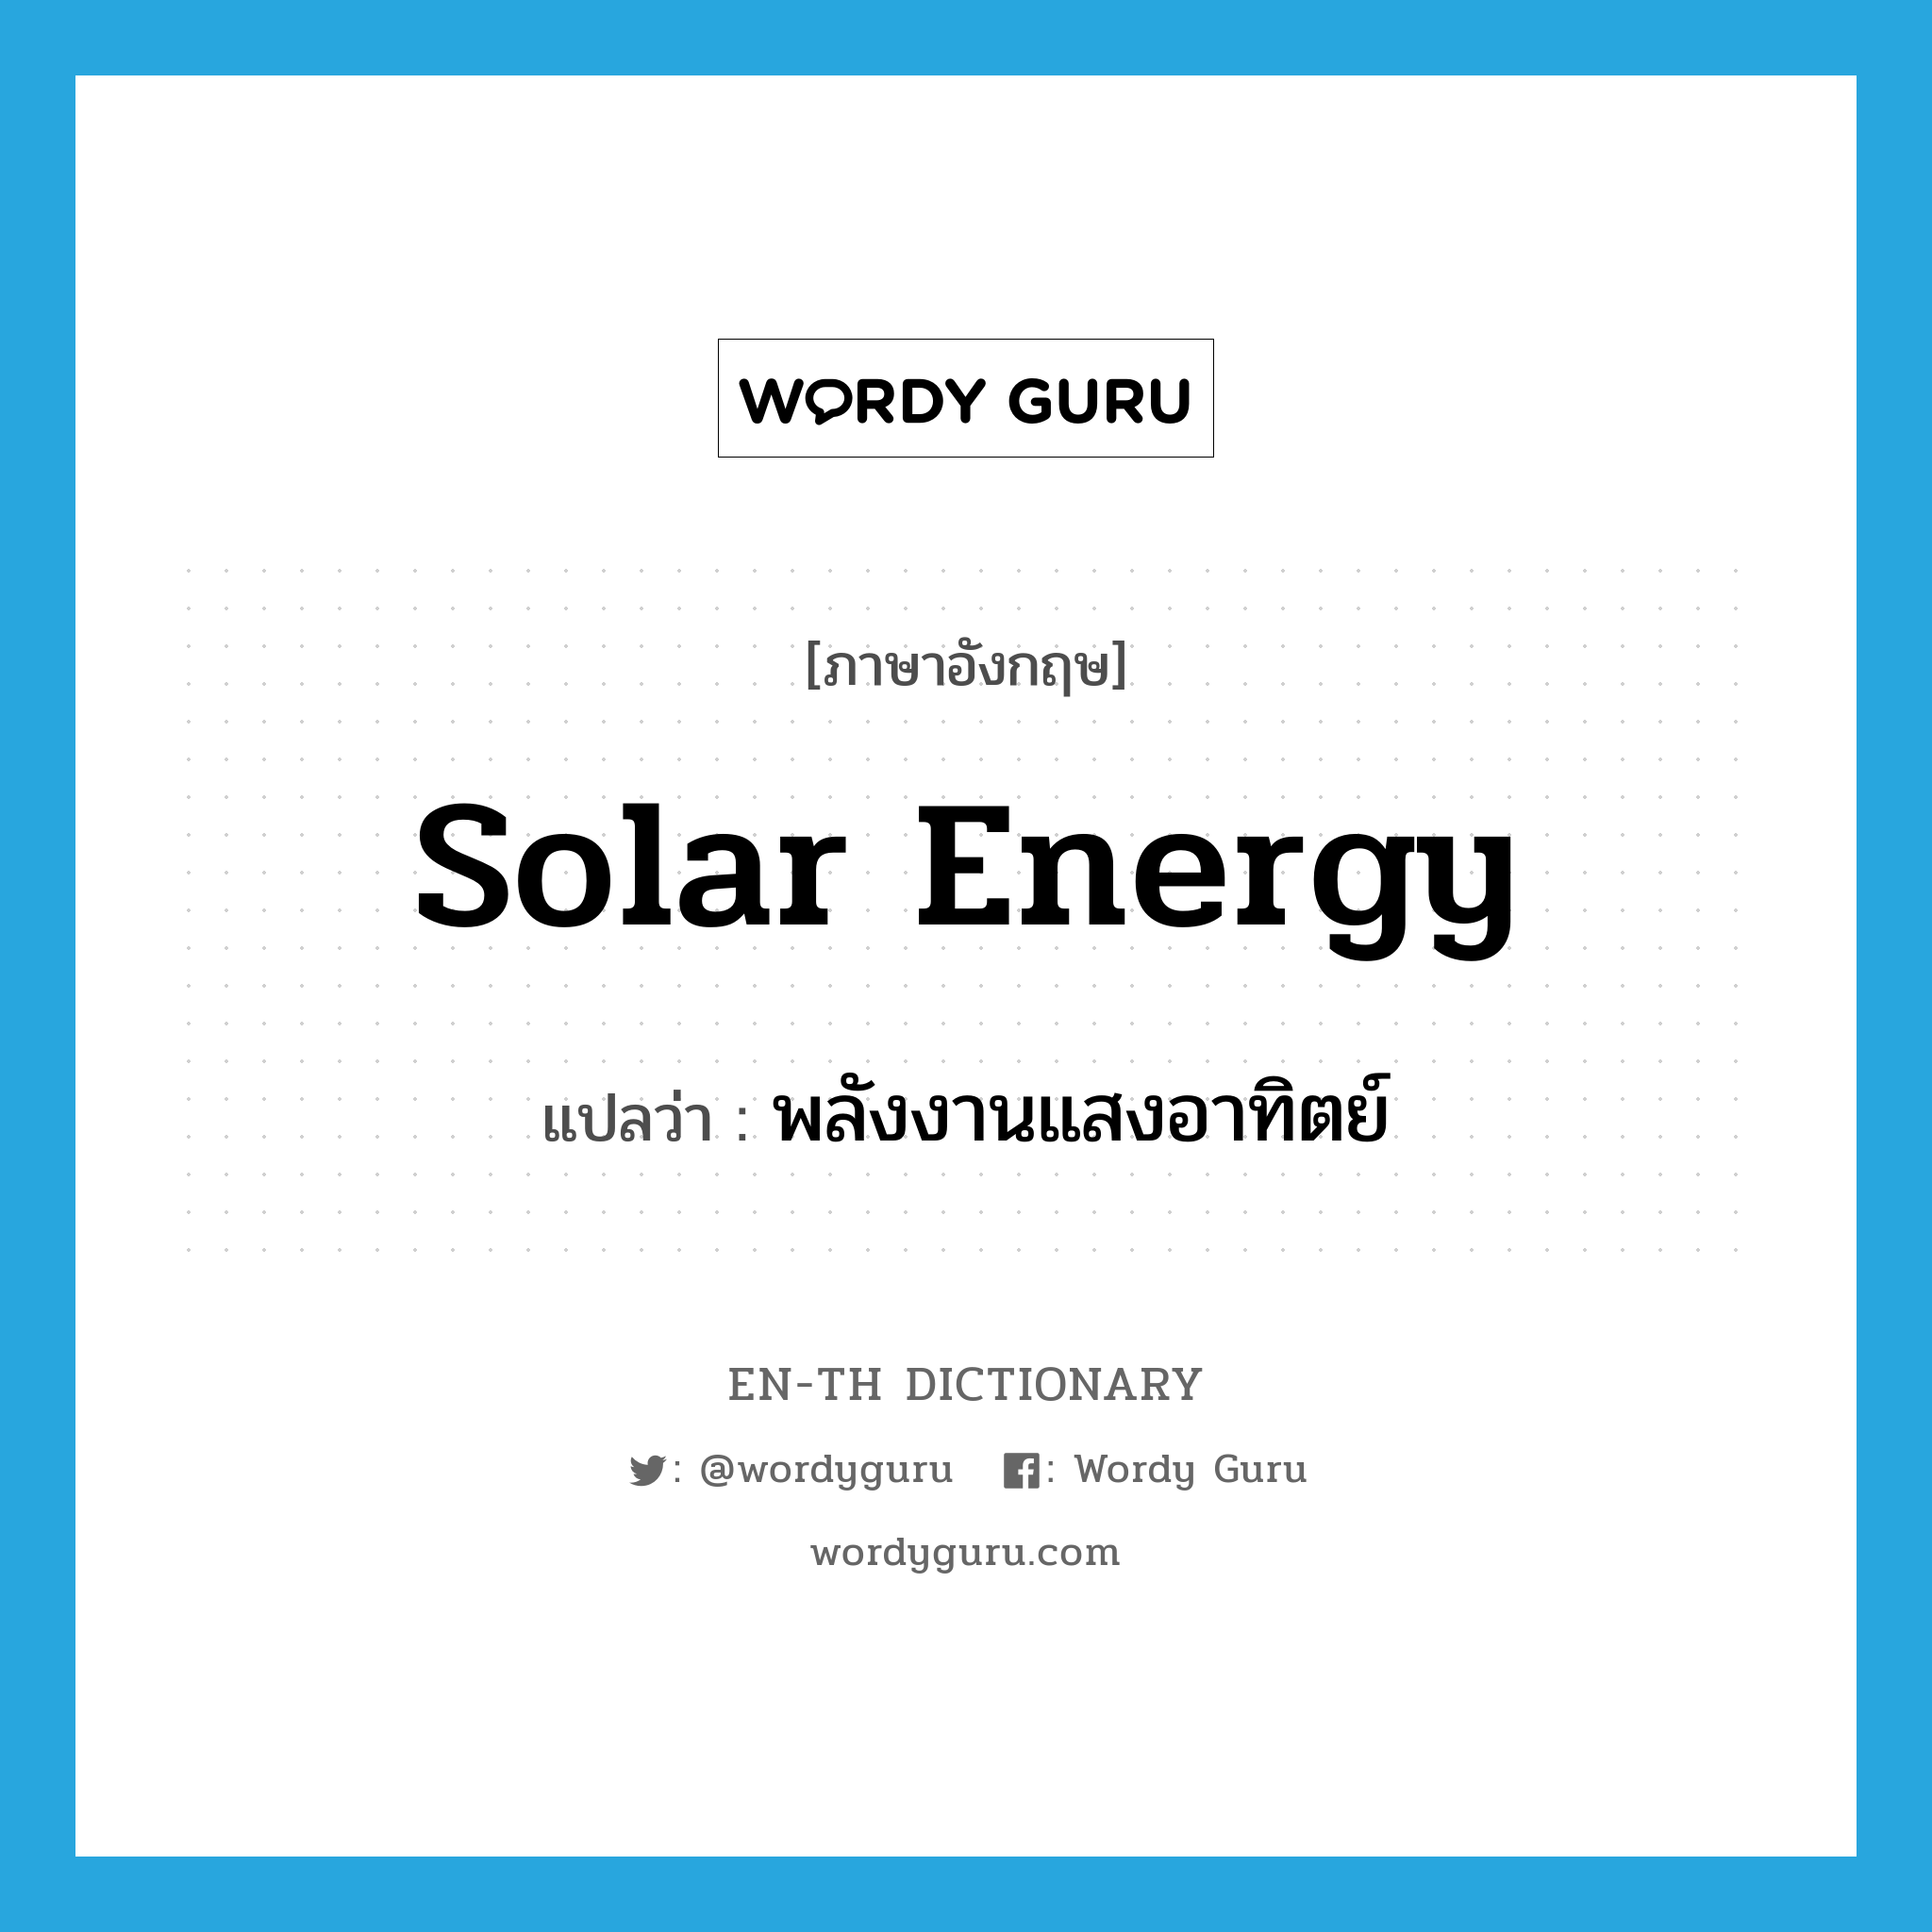 solar energy แปลว่า?, คำศัพท์ภาษาอังกฤษ solar energy แปลว่า พลังงานแสงอาทิตย์ ประเภท N หมวด N